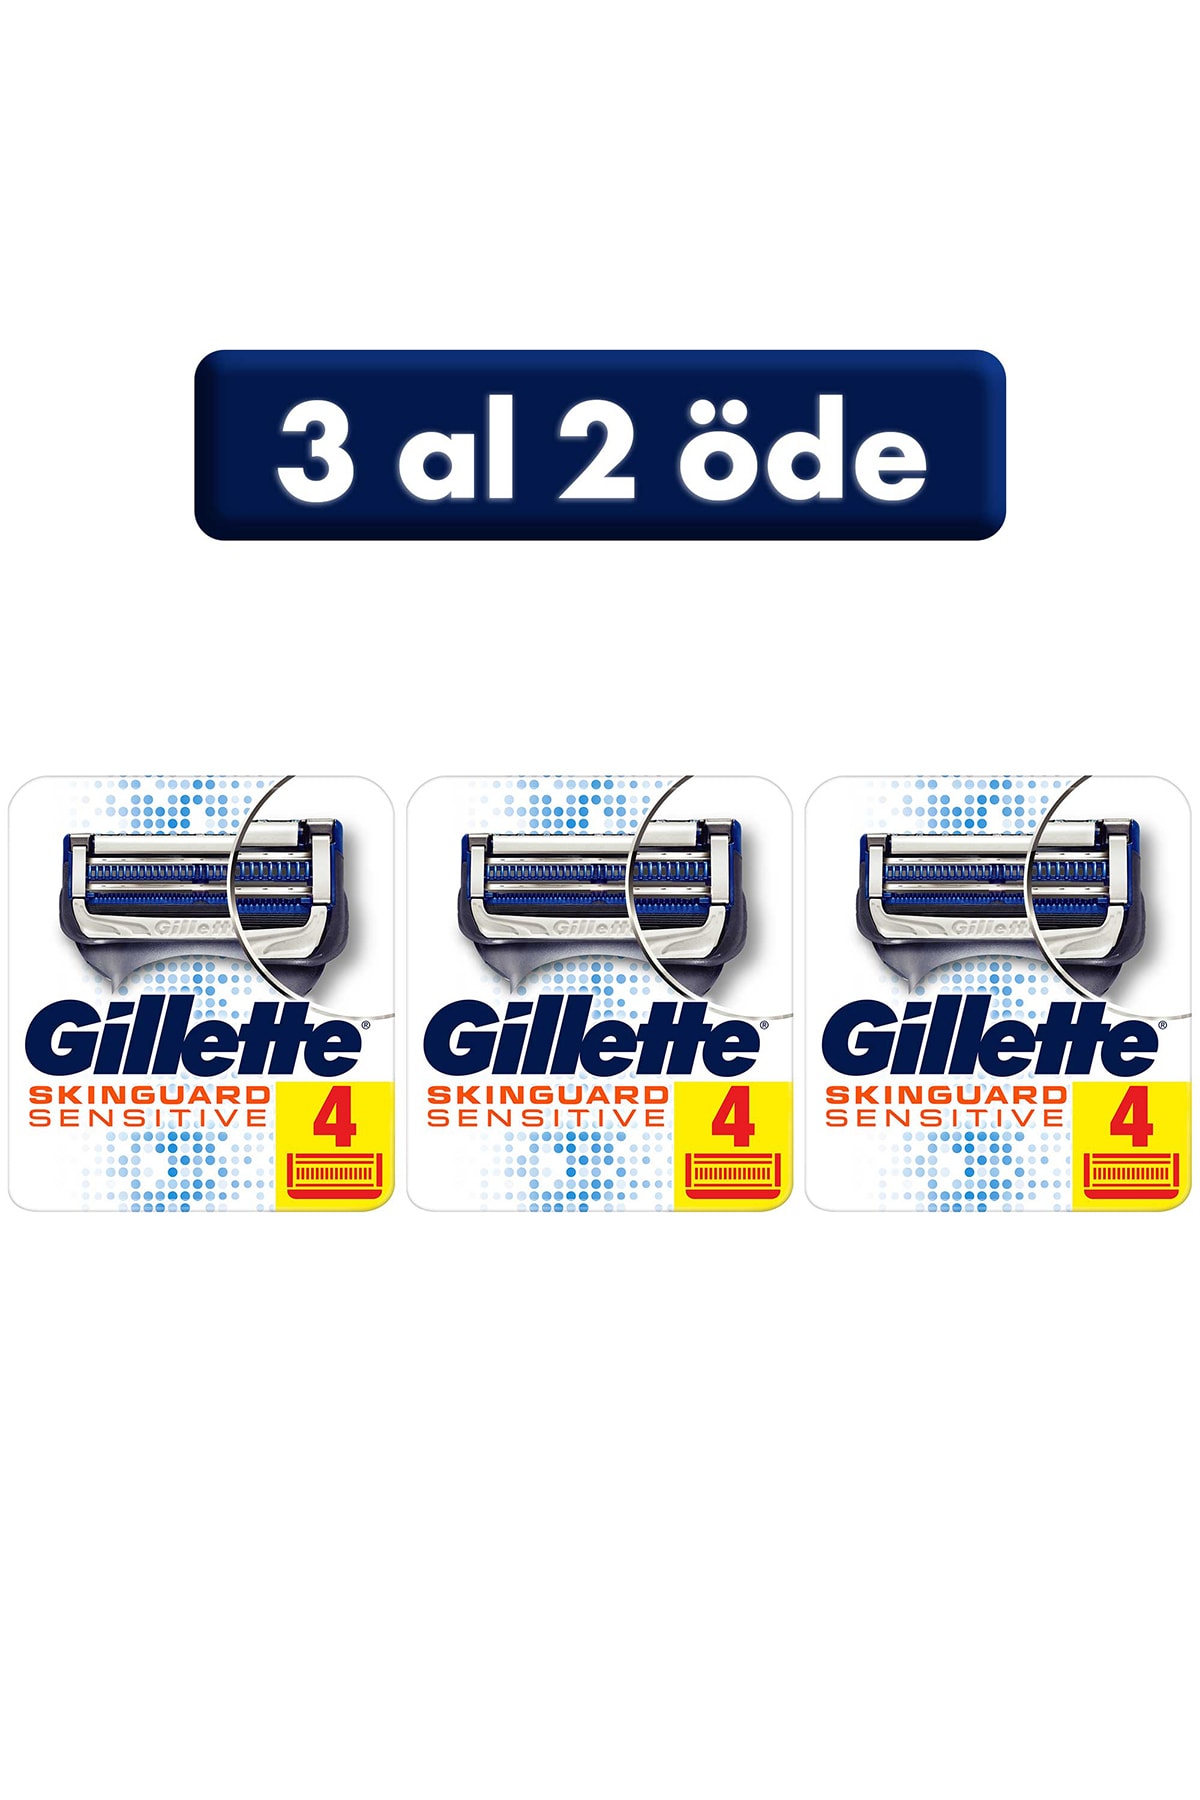 Gillette Skinguard Yedek Tıraş Bıçağı 4'lü (3 AL 2 ÖDE)